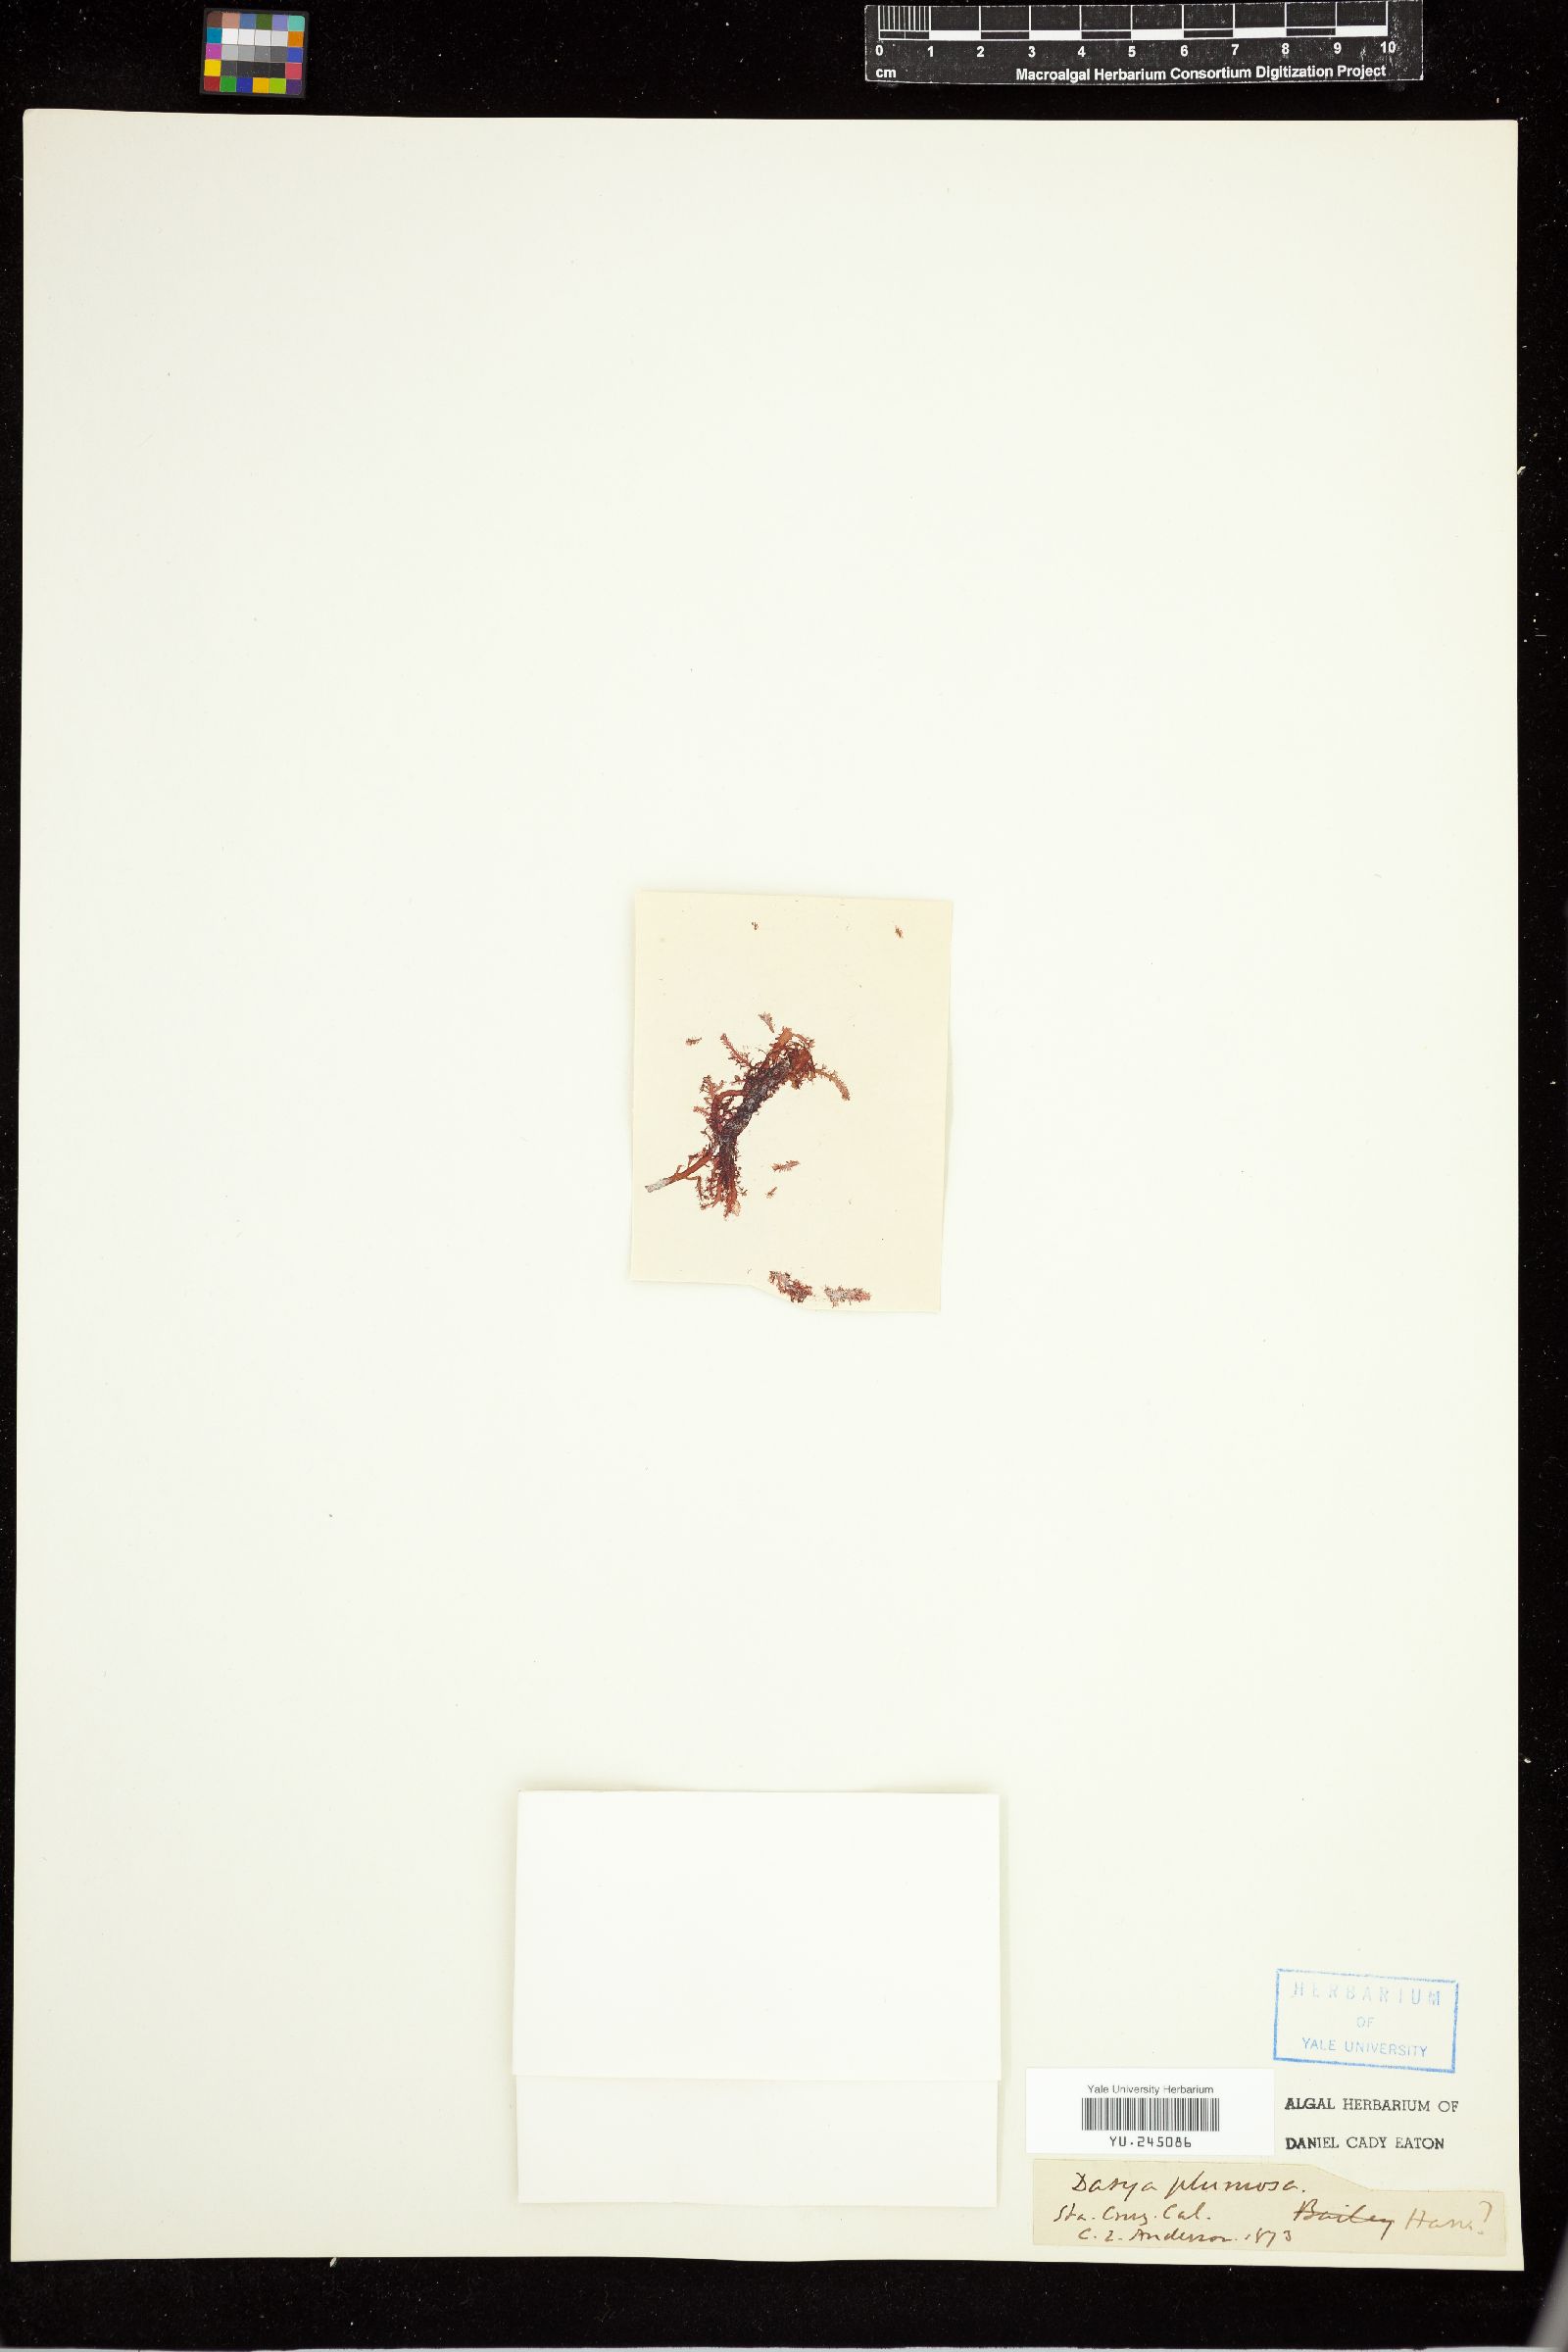 Rhodoptilum image